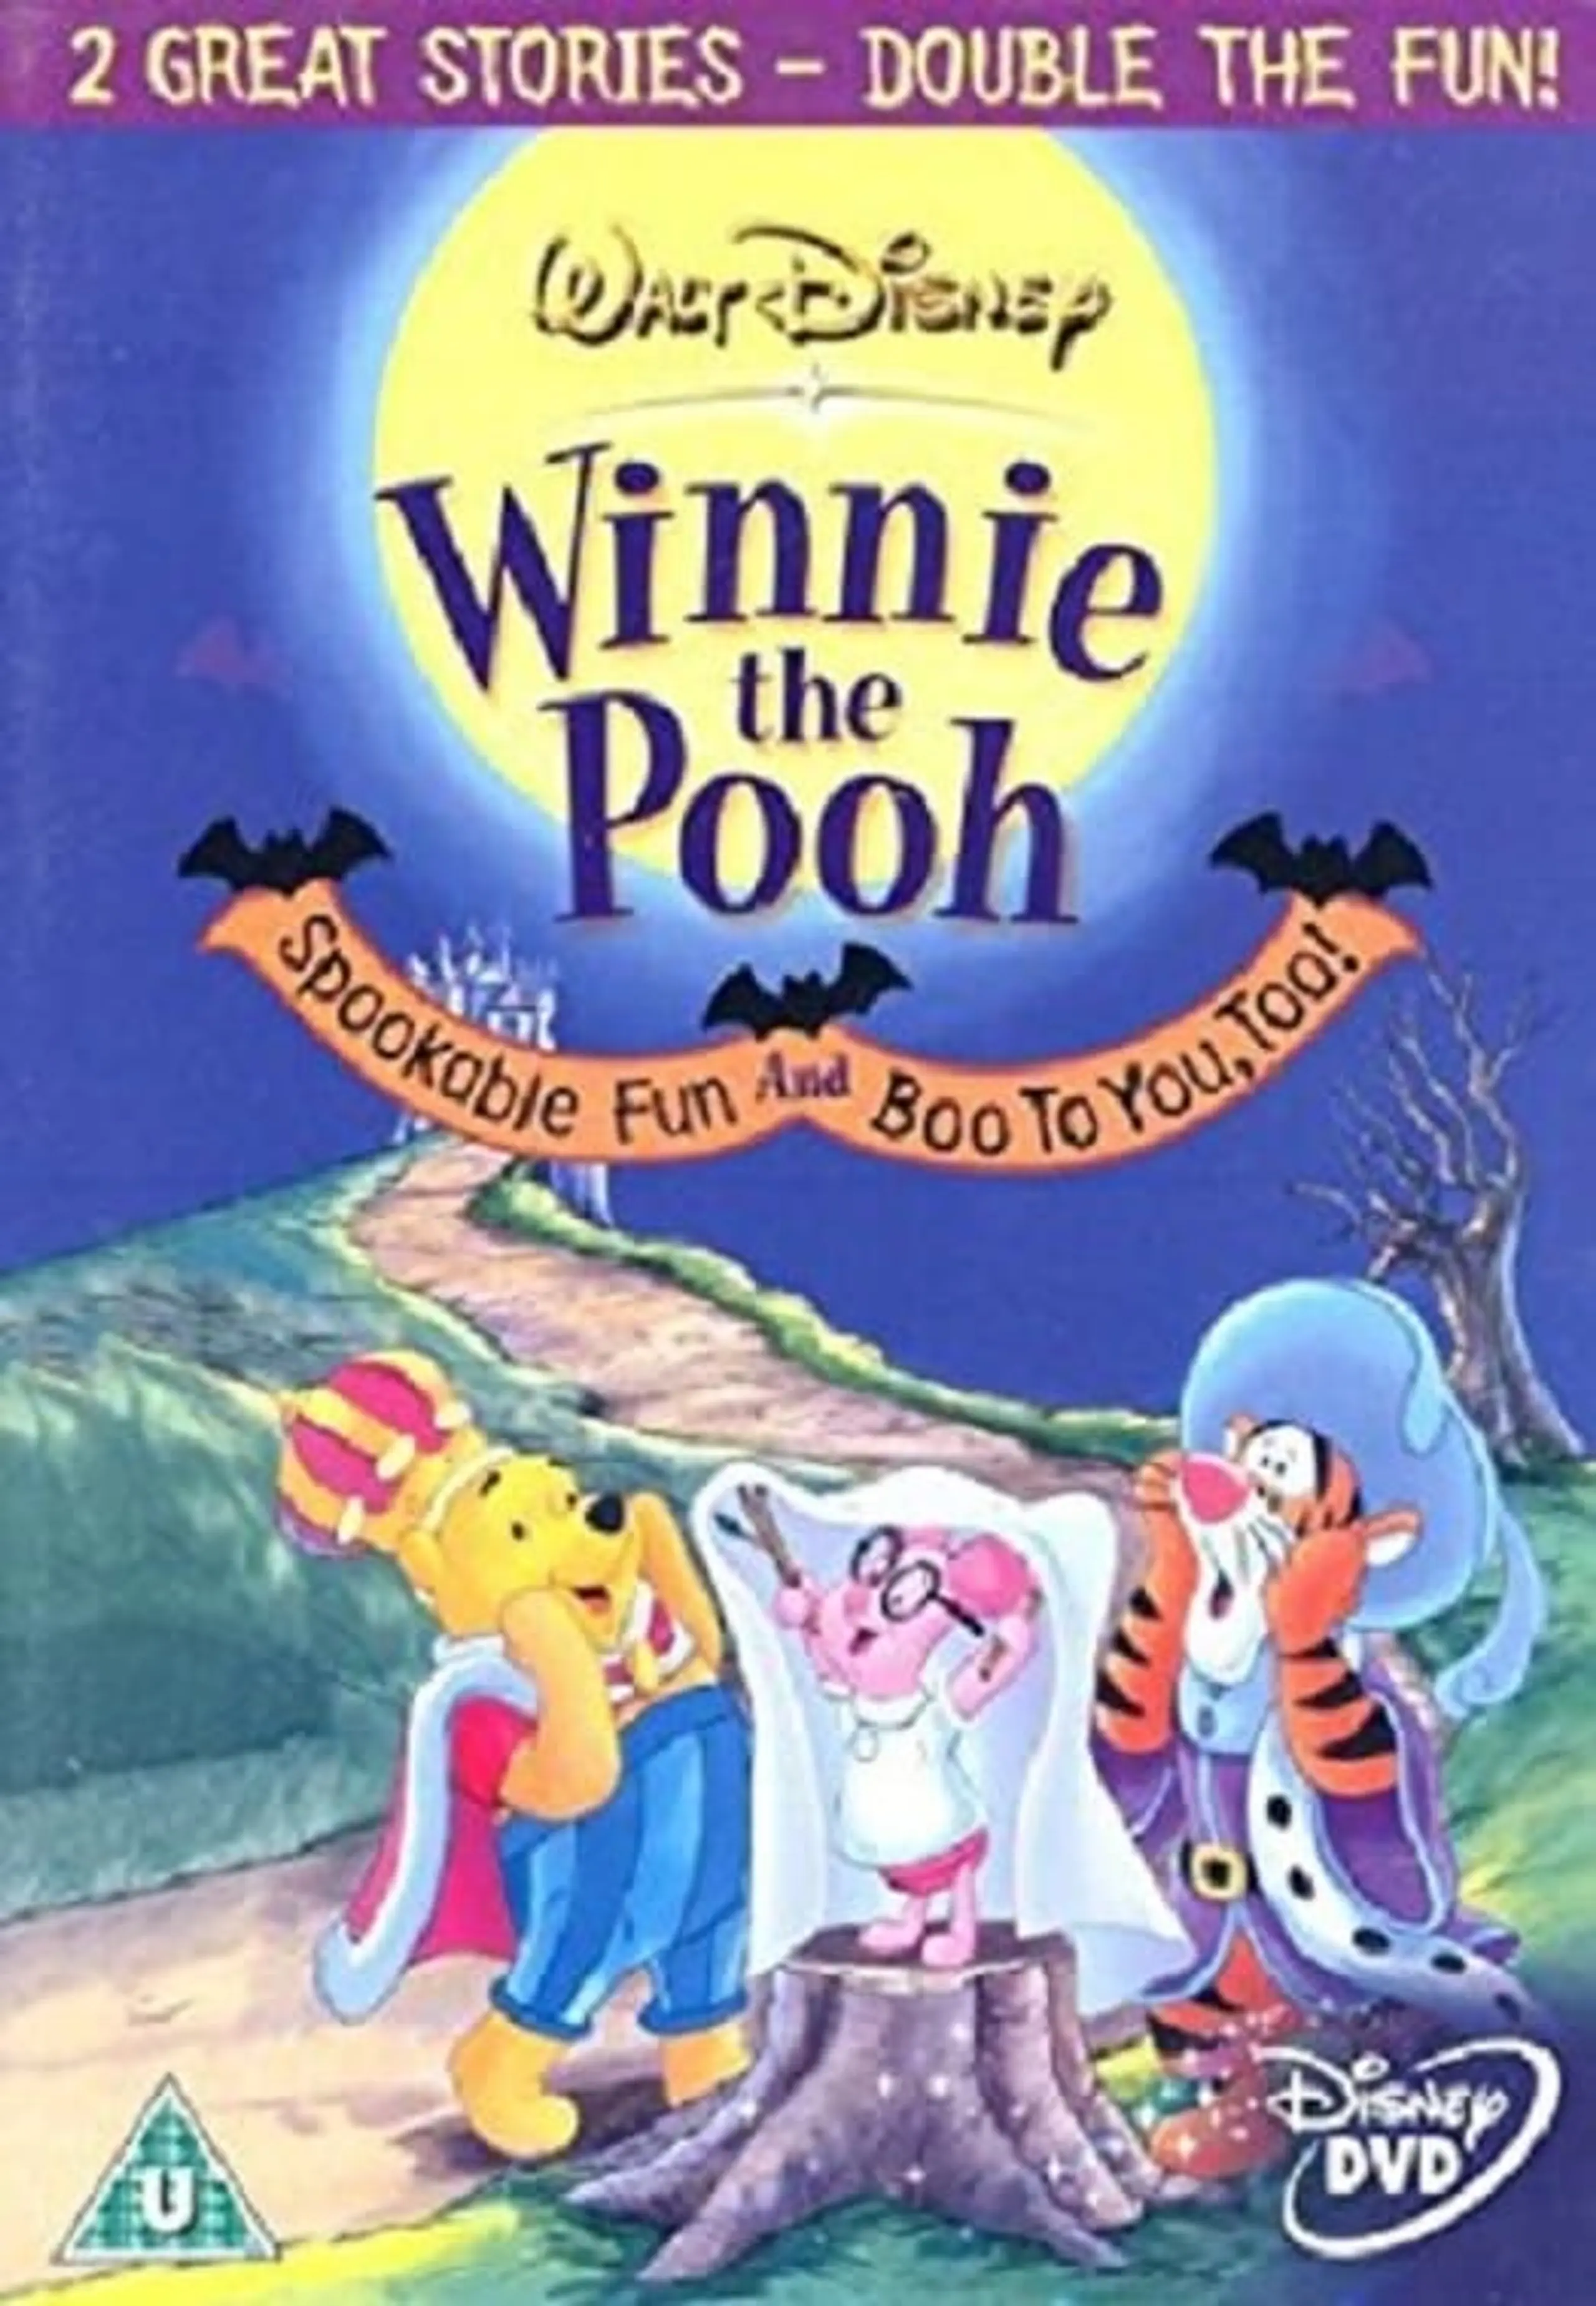 Winnie Puuh - Lustige Spukgeschichten